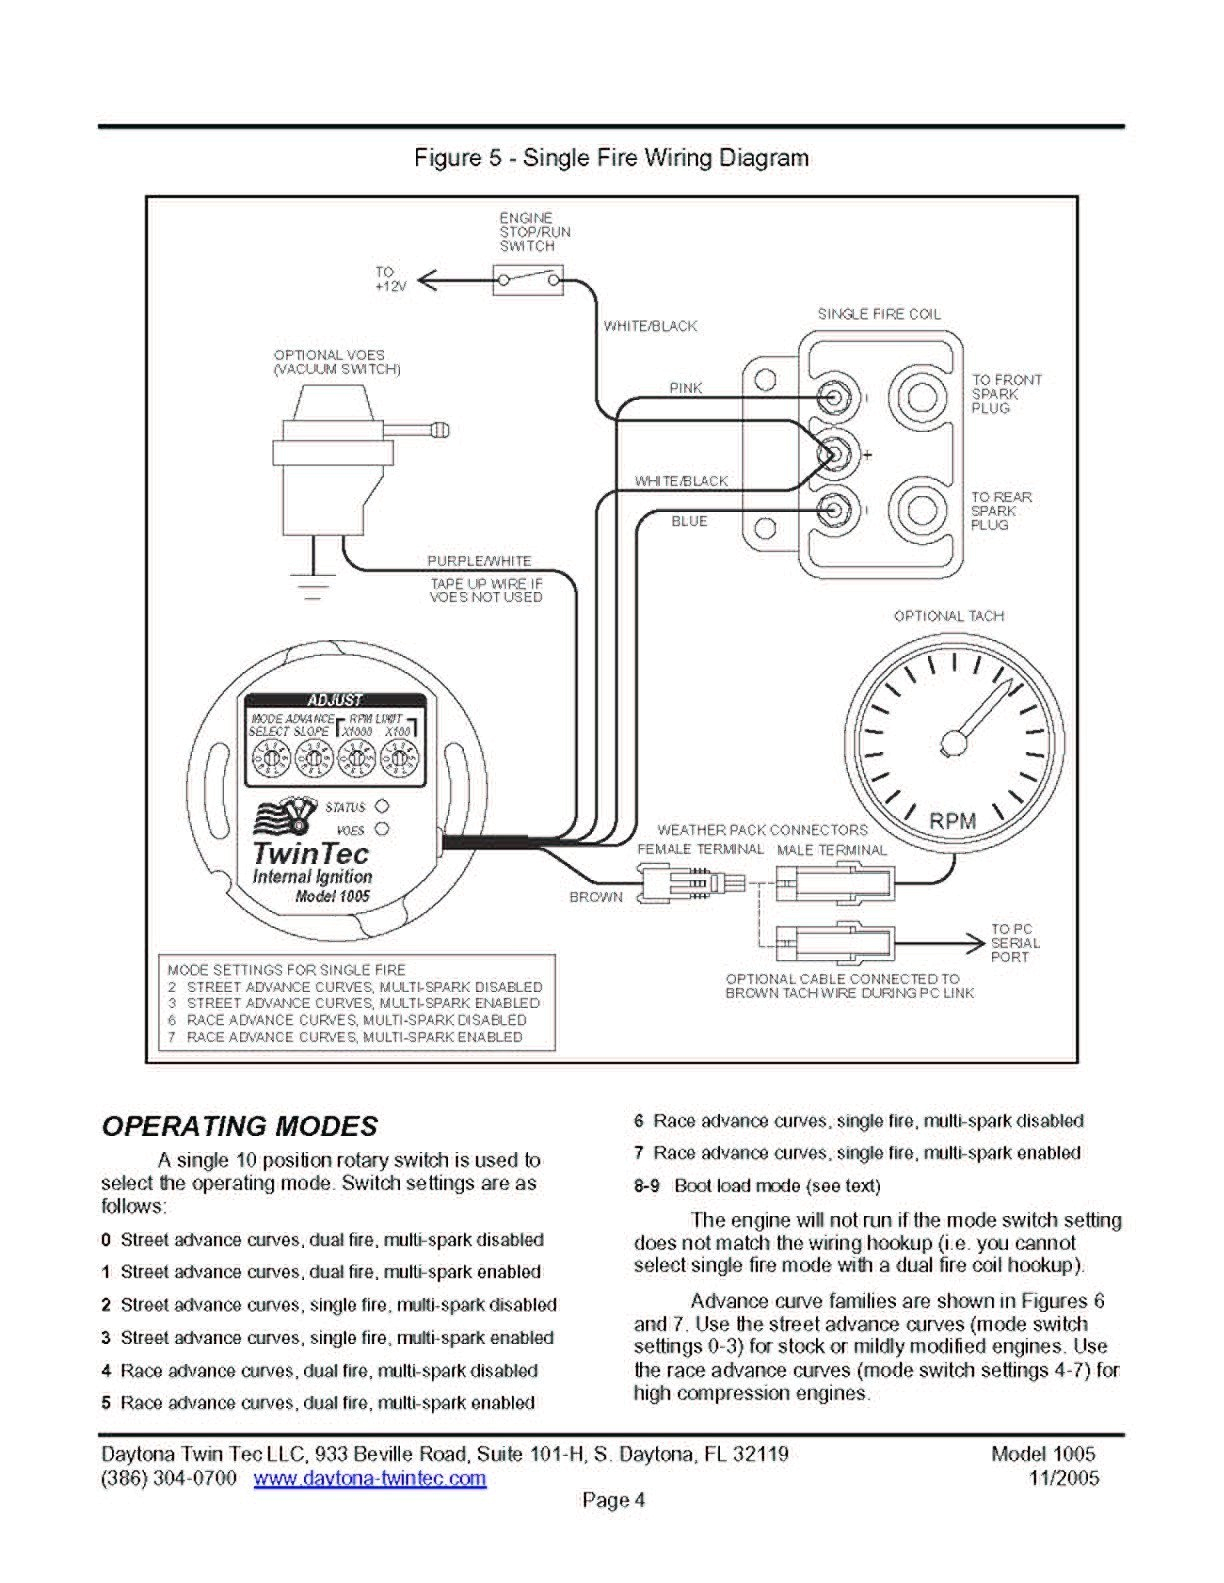 dyna 2000i wiring wiring diagram toolboxdyna 2000i wiring harness wiring diagram log dyna 2000i wiring